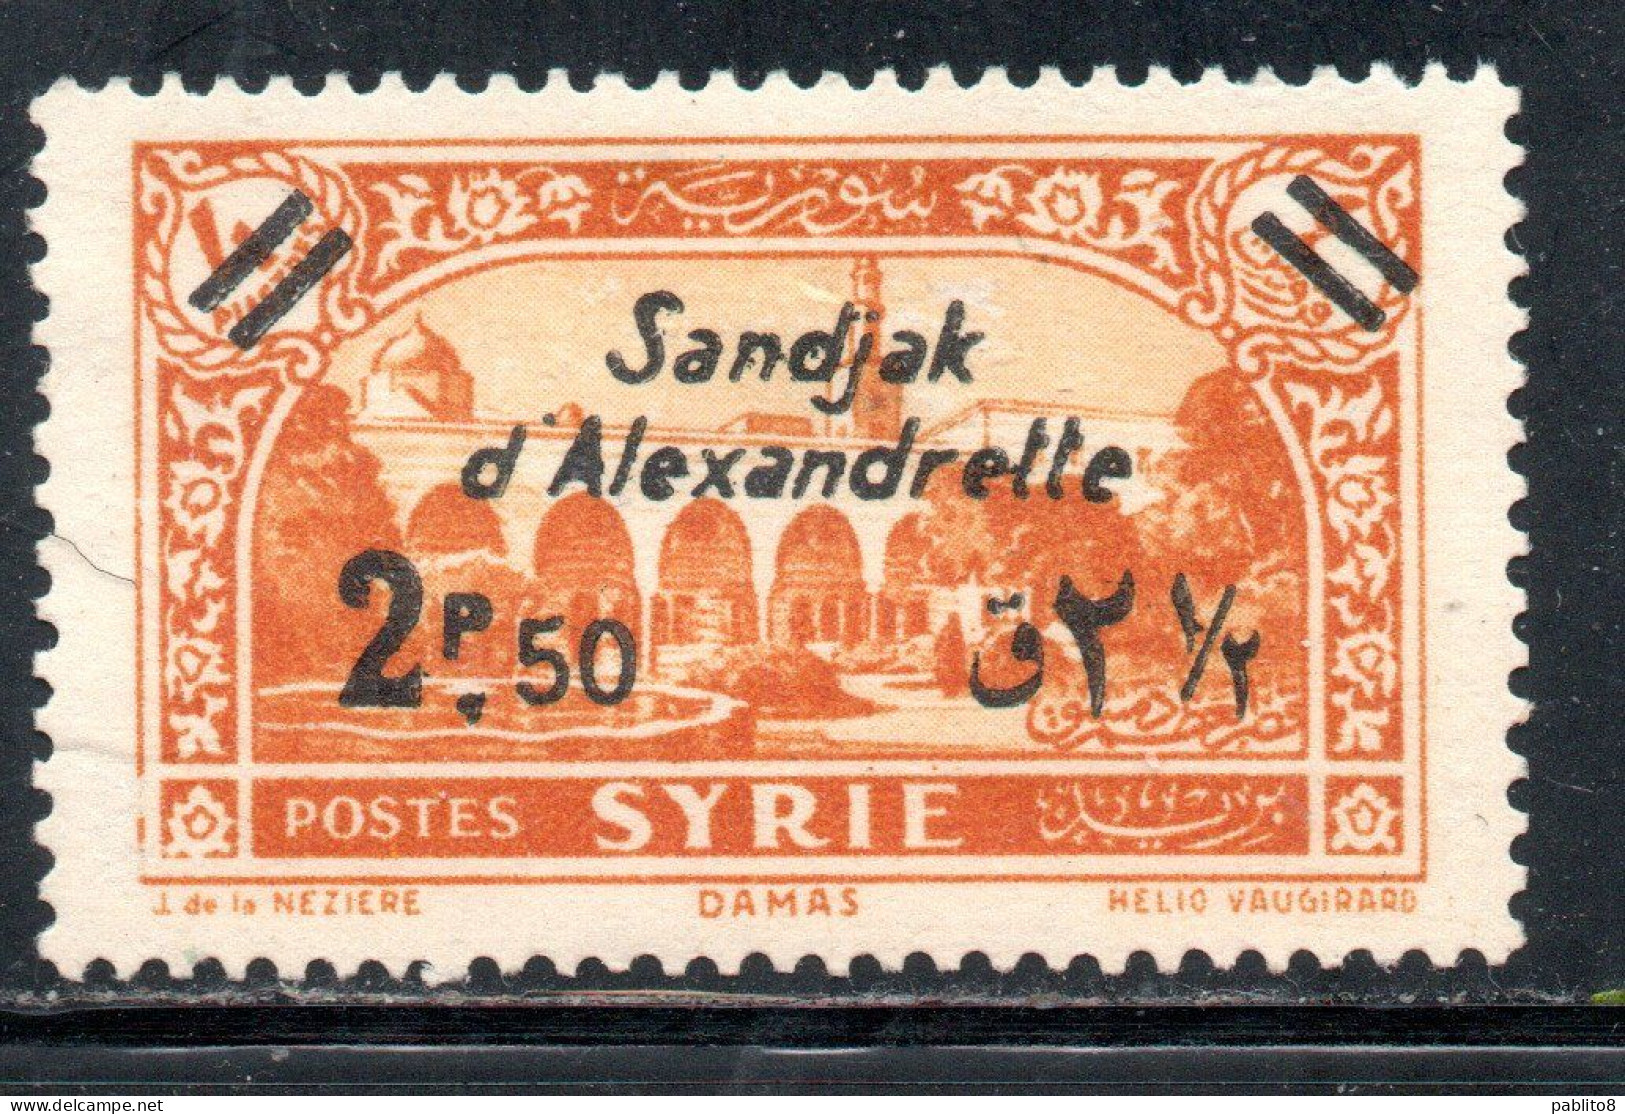 SANDJAK D'ALEXANDRETTE ALEXANDRETTA 1938 SURCHARGED 2.50p On 4p MNH - Ongebruikt